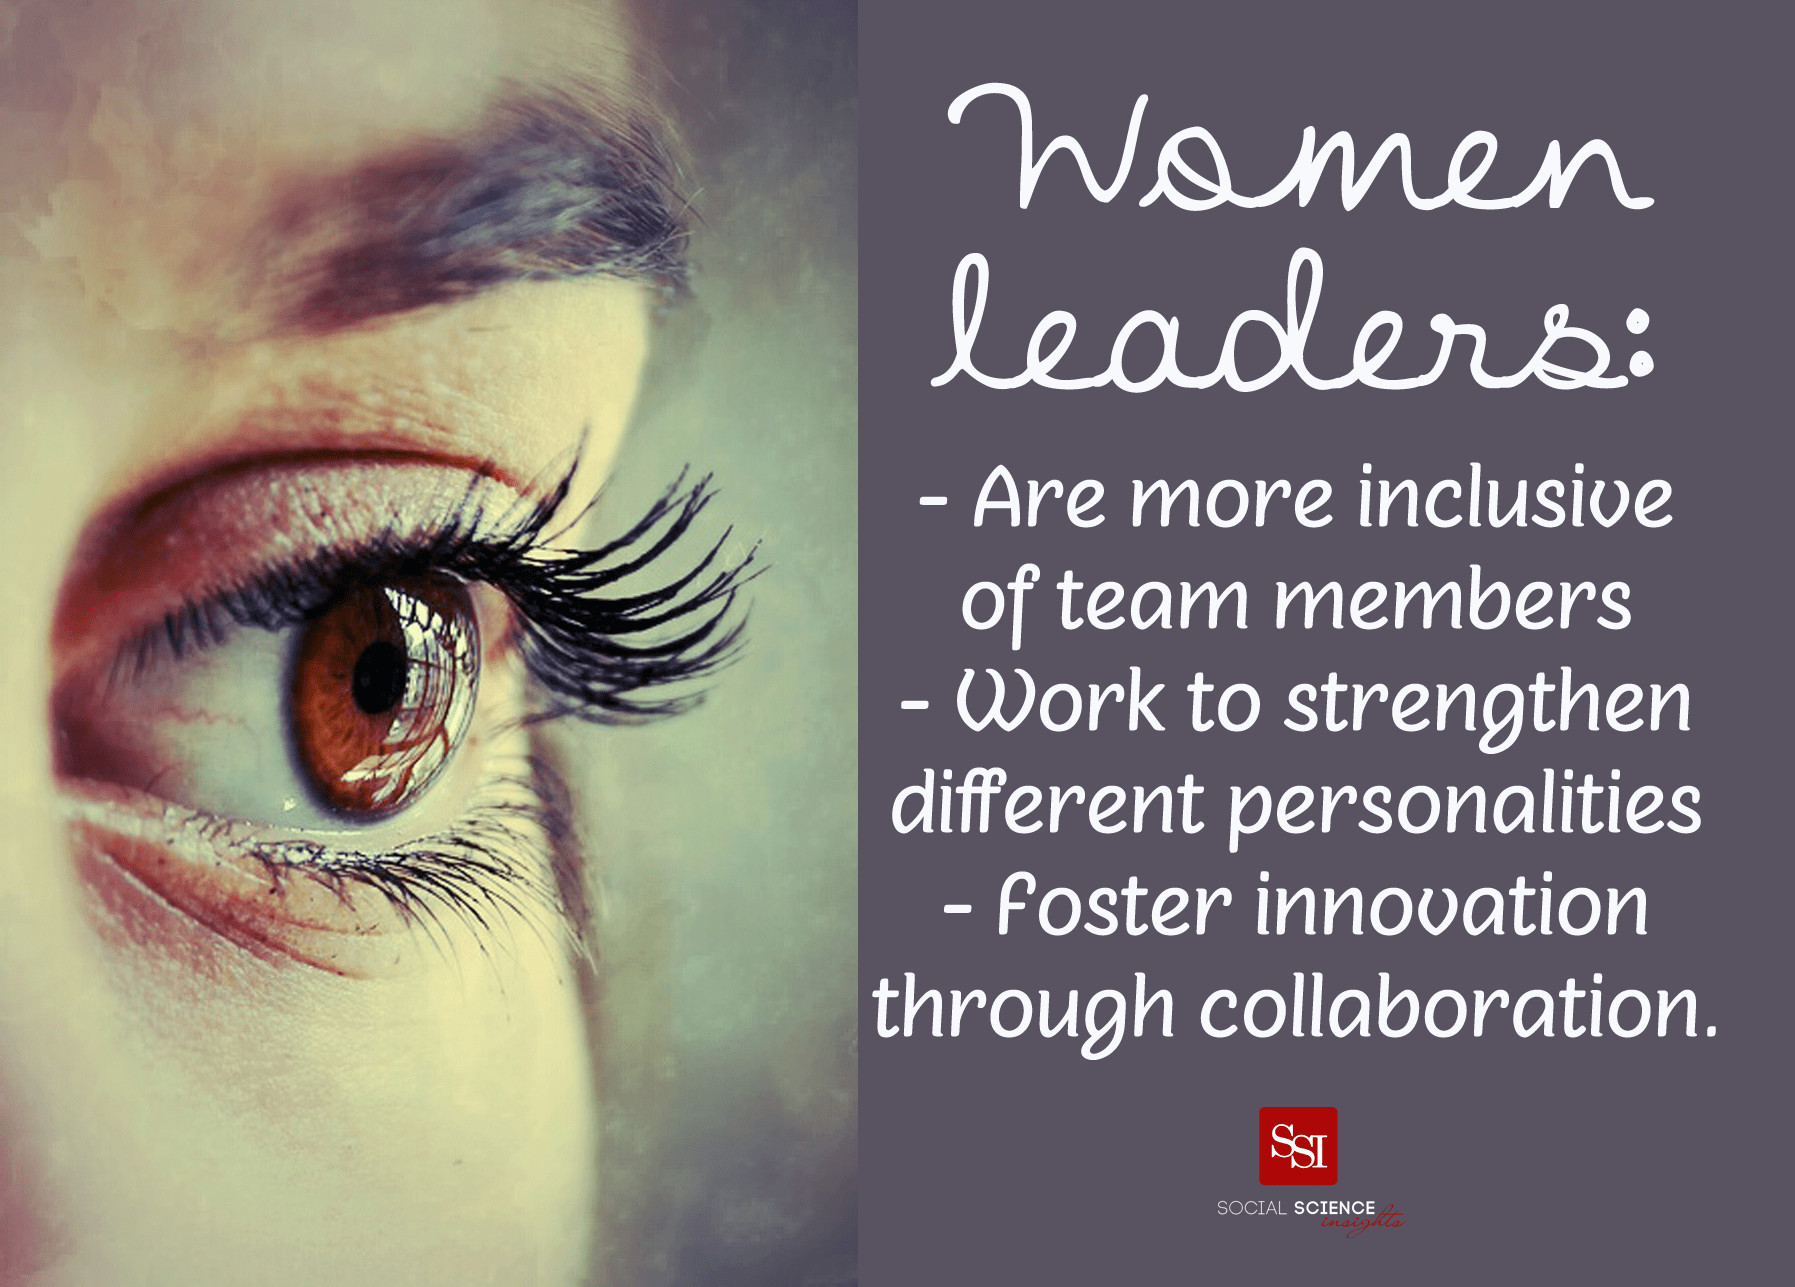 Women In Leadership Quote
 Women Leadership Quotes QuotesGram